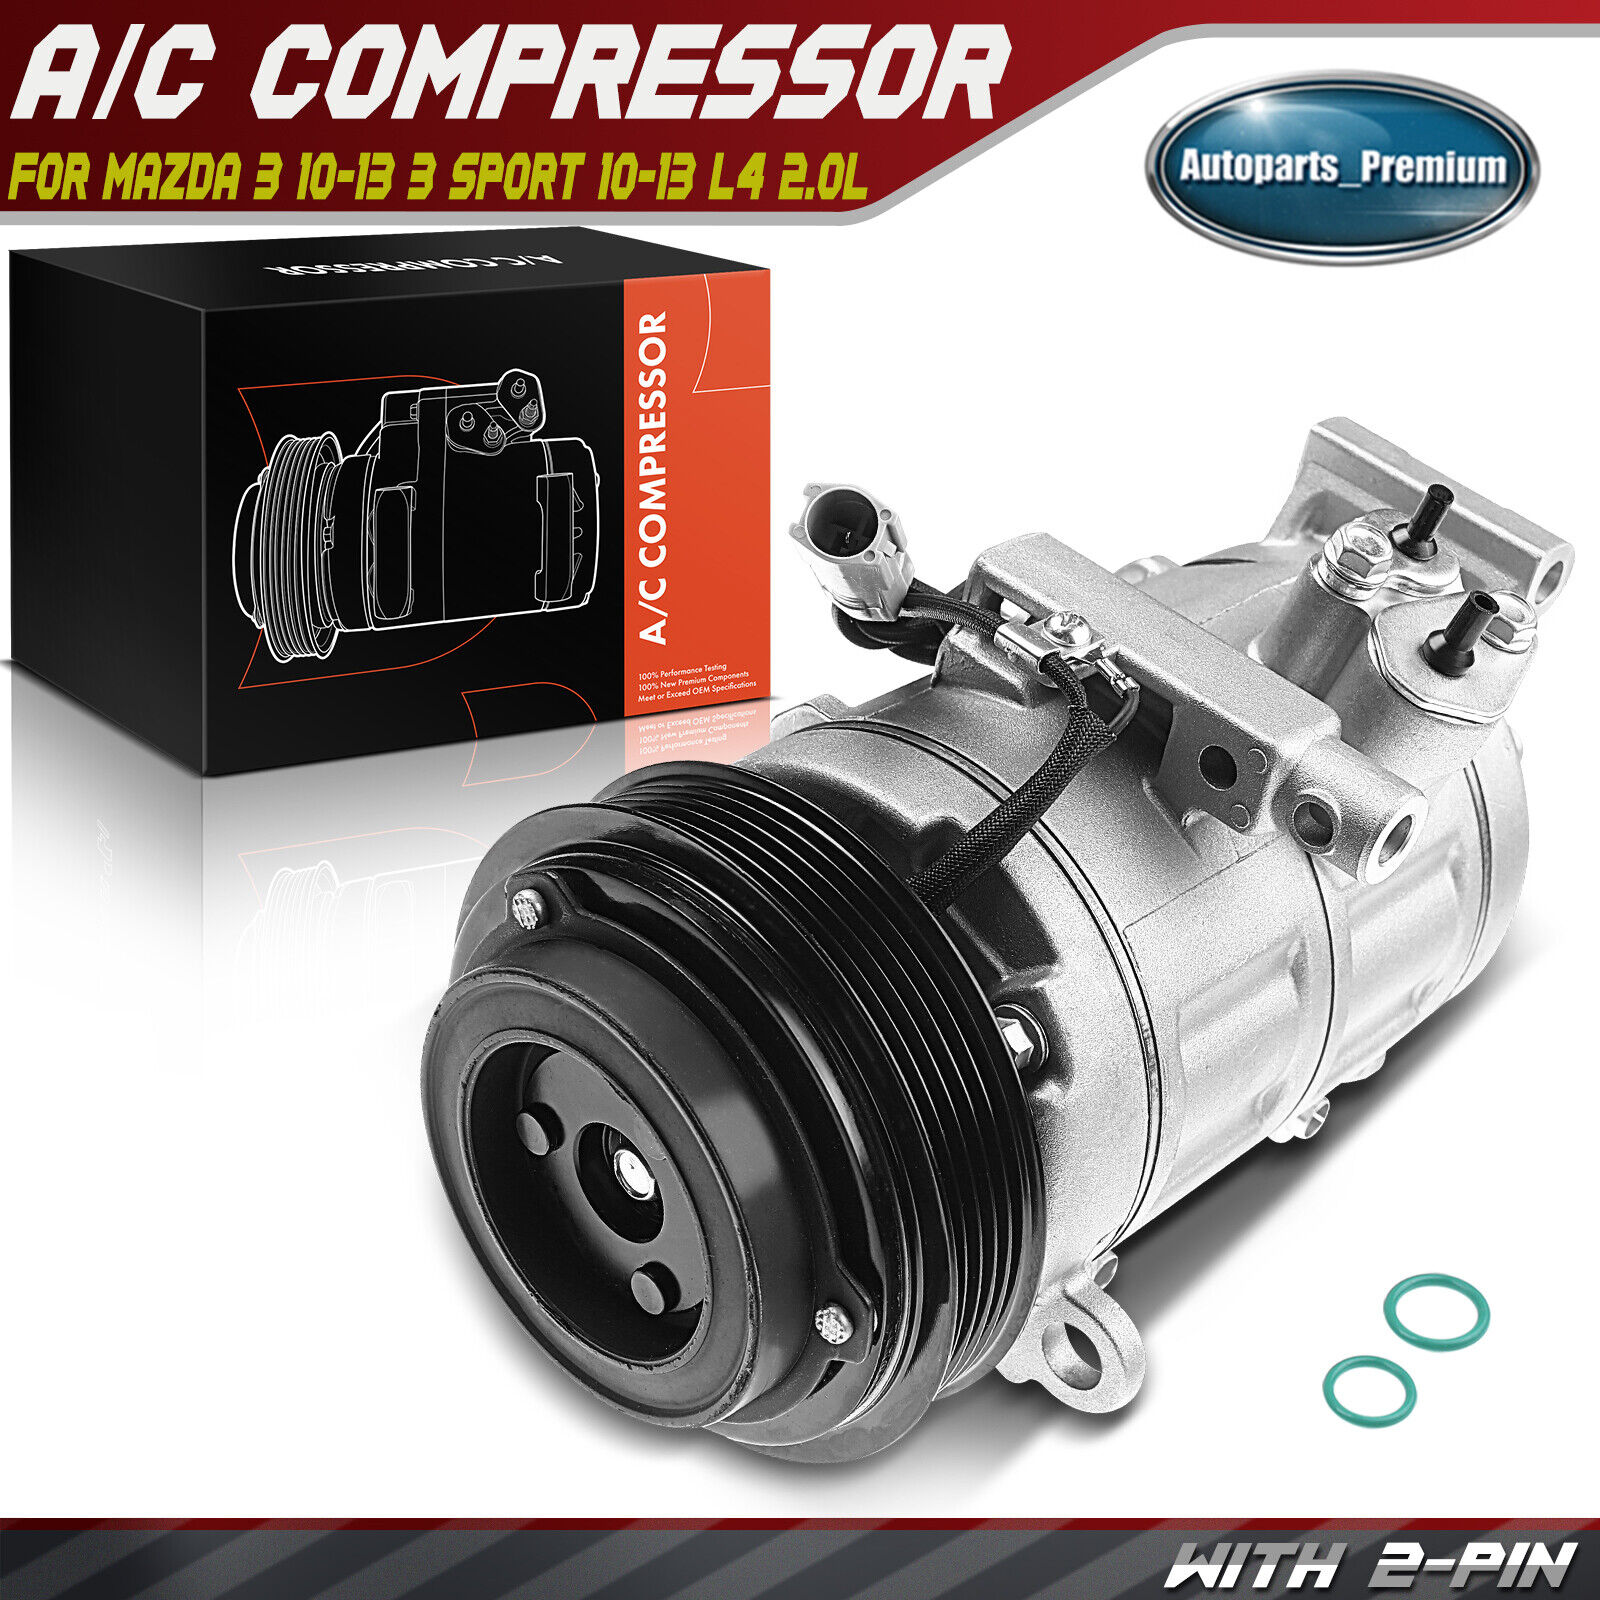 AC Compressor w/ Clutch & Pulley for Mazda 3 2010-2013 3 Sport 2010-2013 L4 2.0L